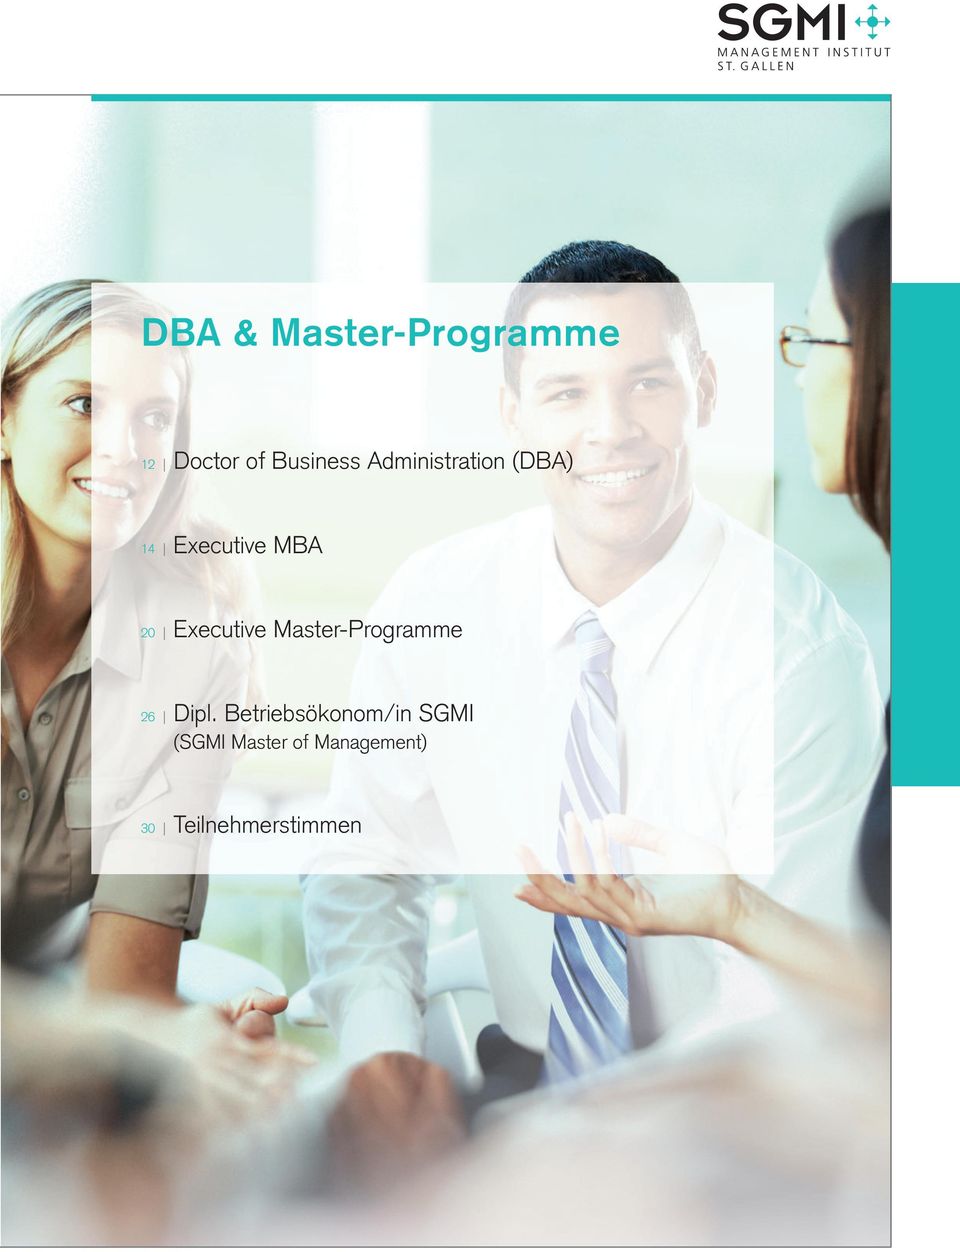 Executive Master-Programme 26 Dipl.